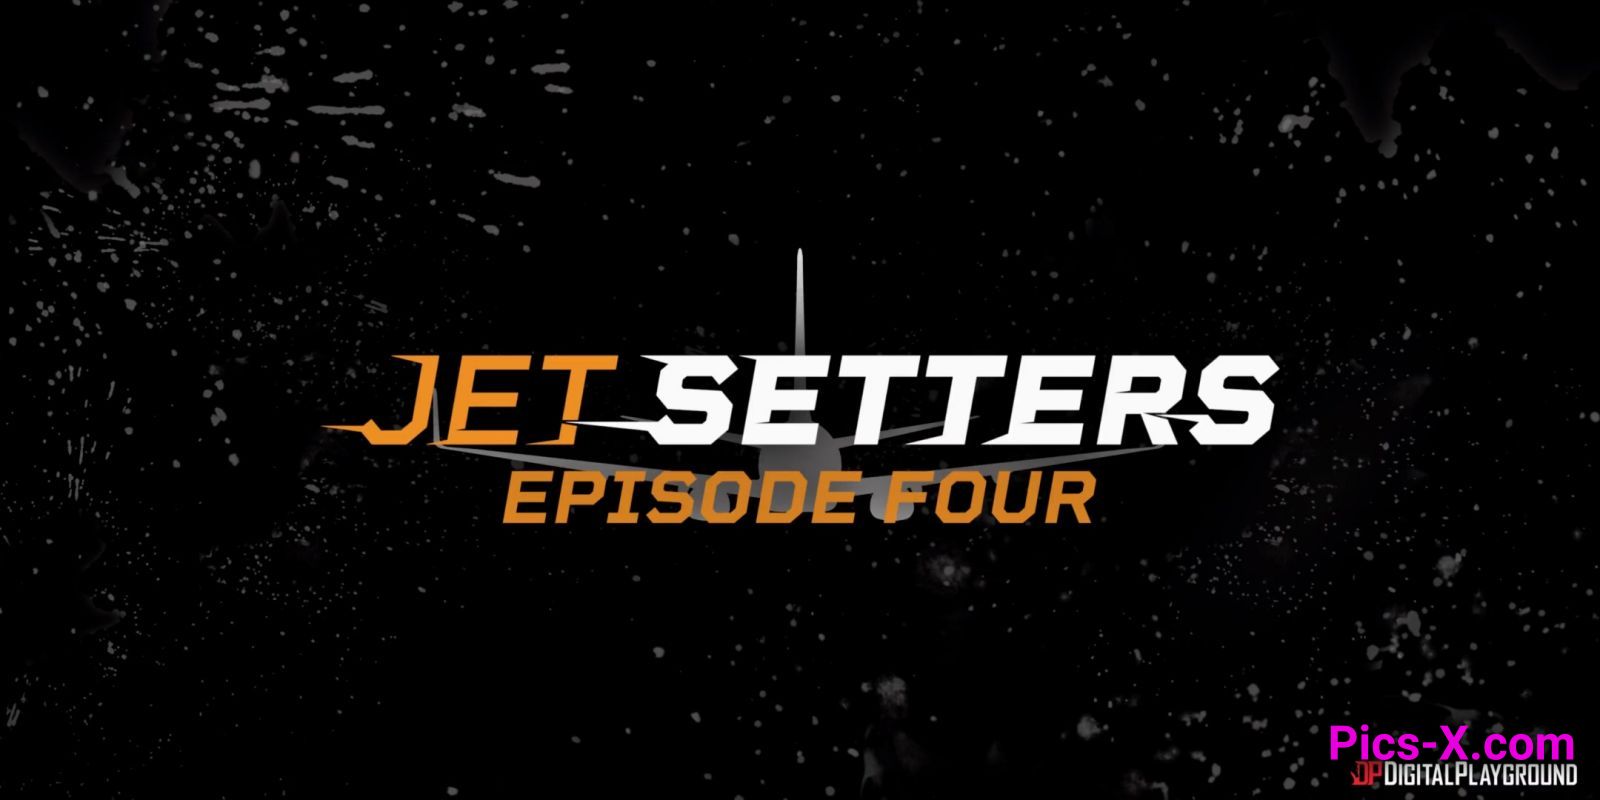 Jet Setters - Episode 4 - Episodes - Image 6